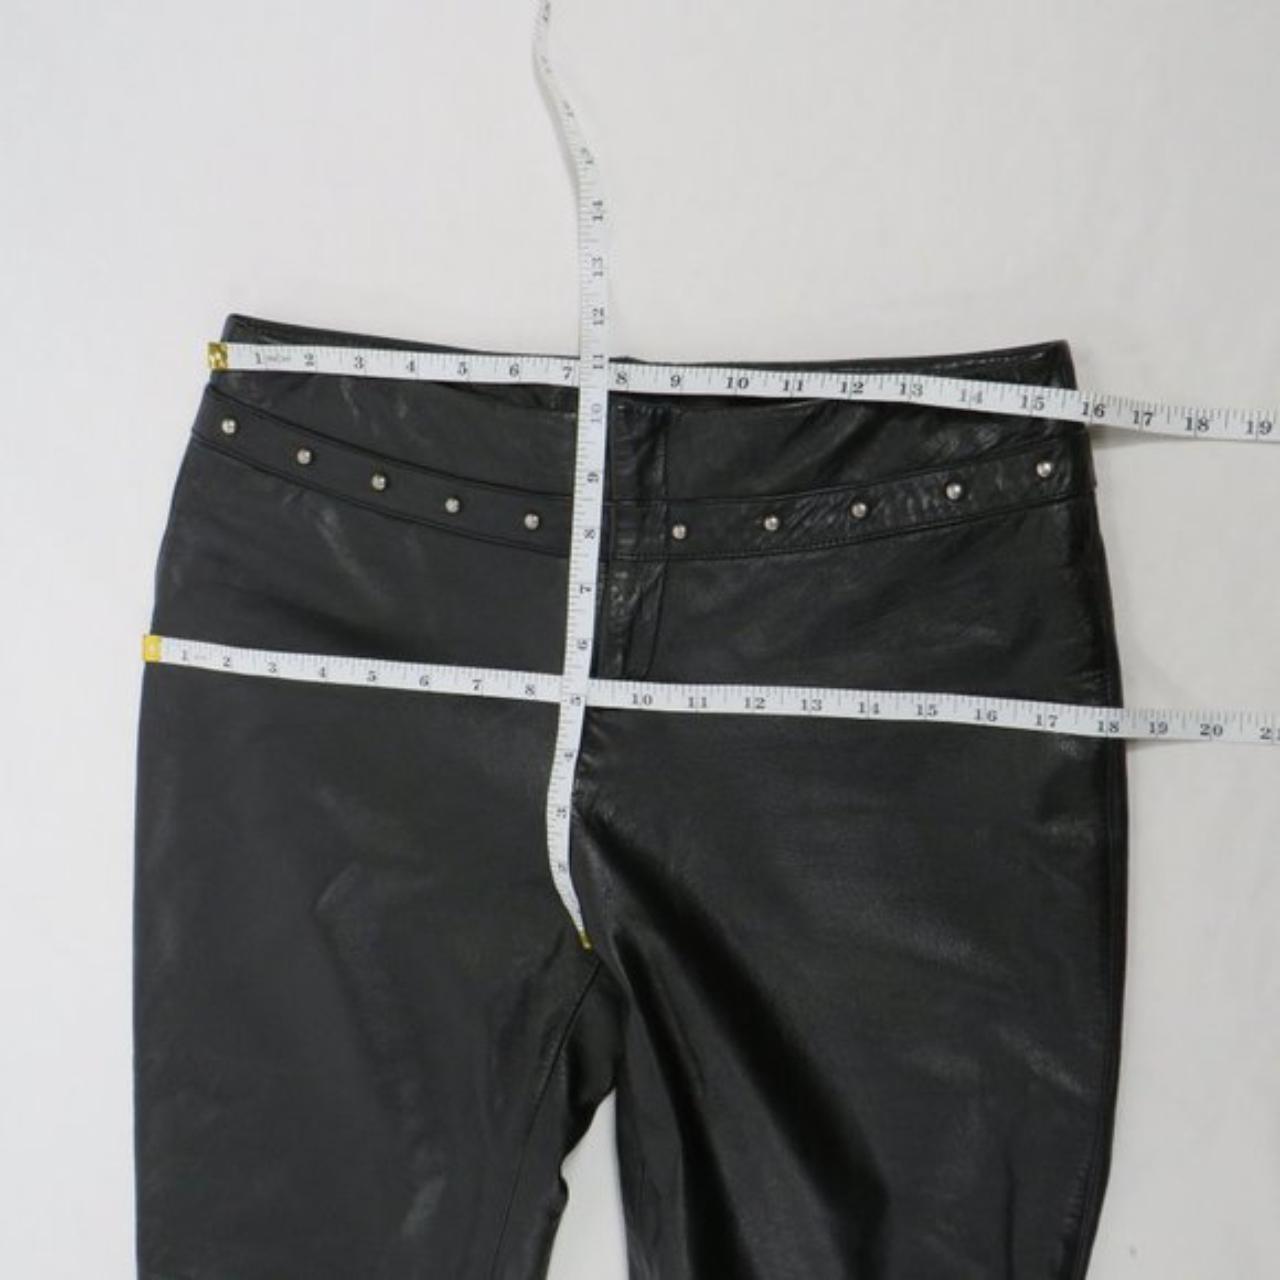 Ralph Lauren black leather mid-rise pants with... - Depop